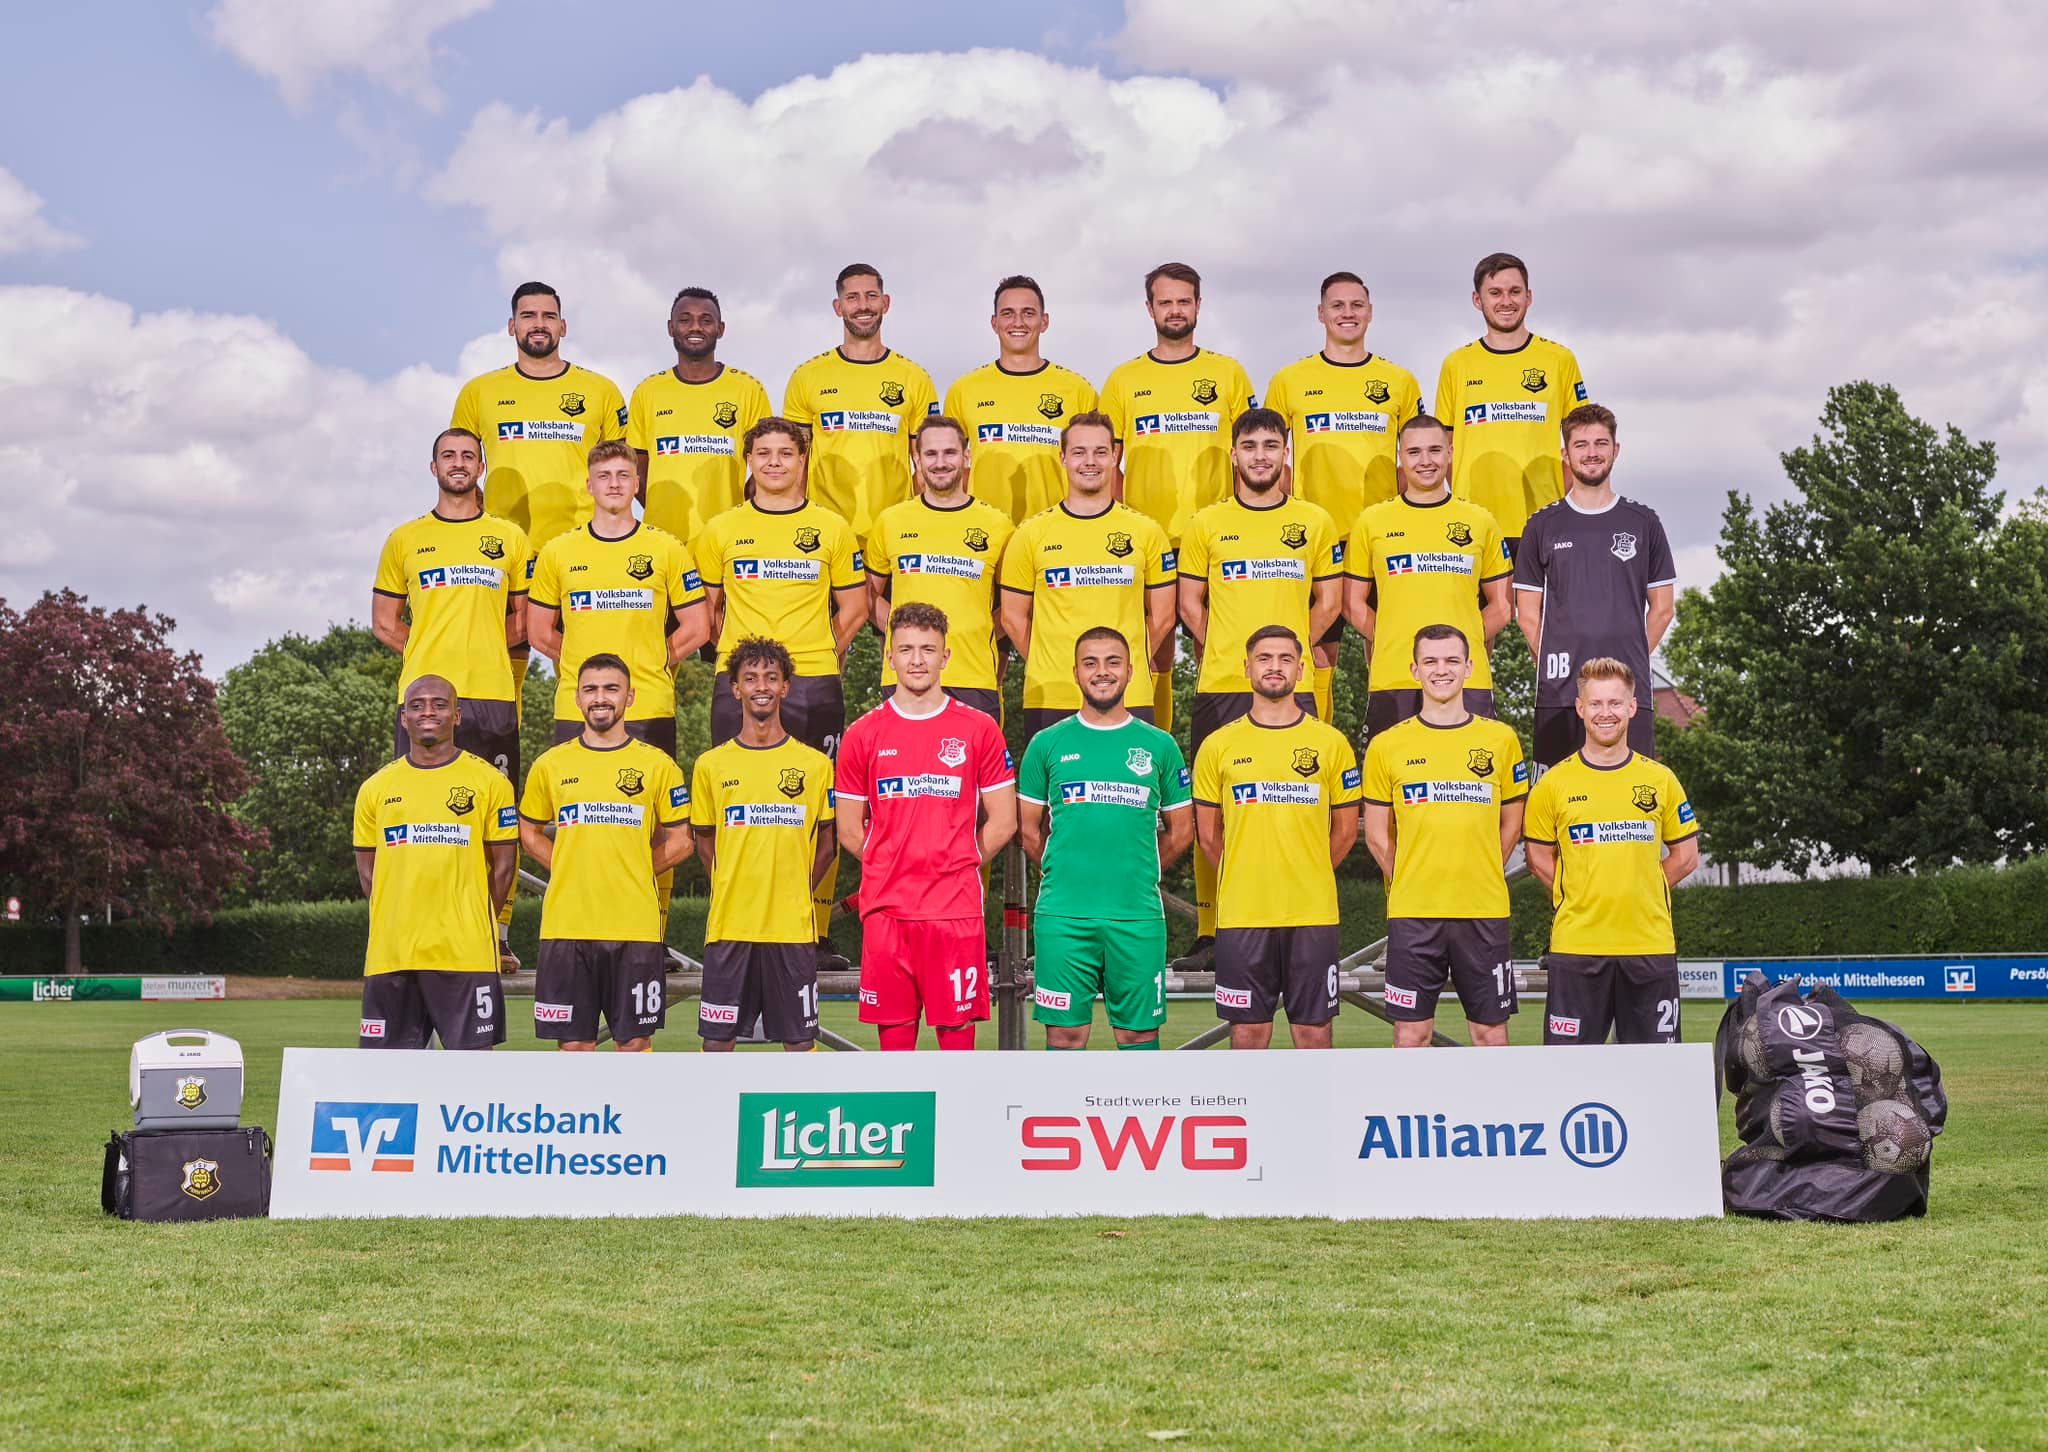 Morgen geht es auch für unsere Zweite Mannschaft in der Kreisliga A-Gießen los.